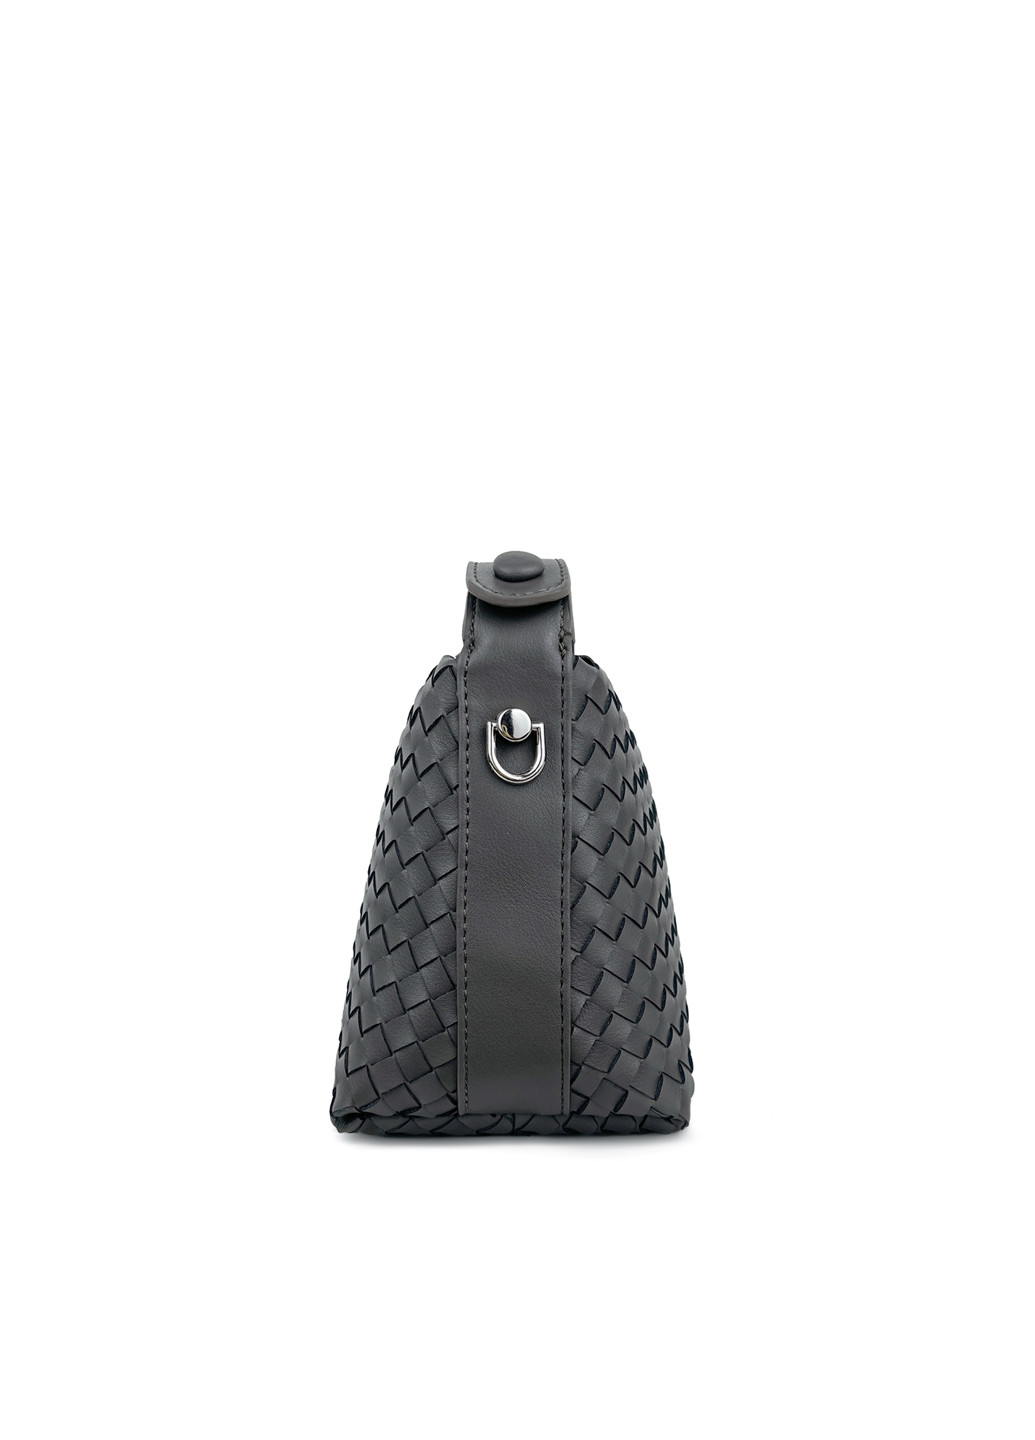 Маленькая женская сумка серая из кожи Fashion (251853921)